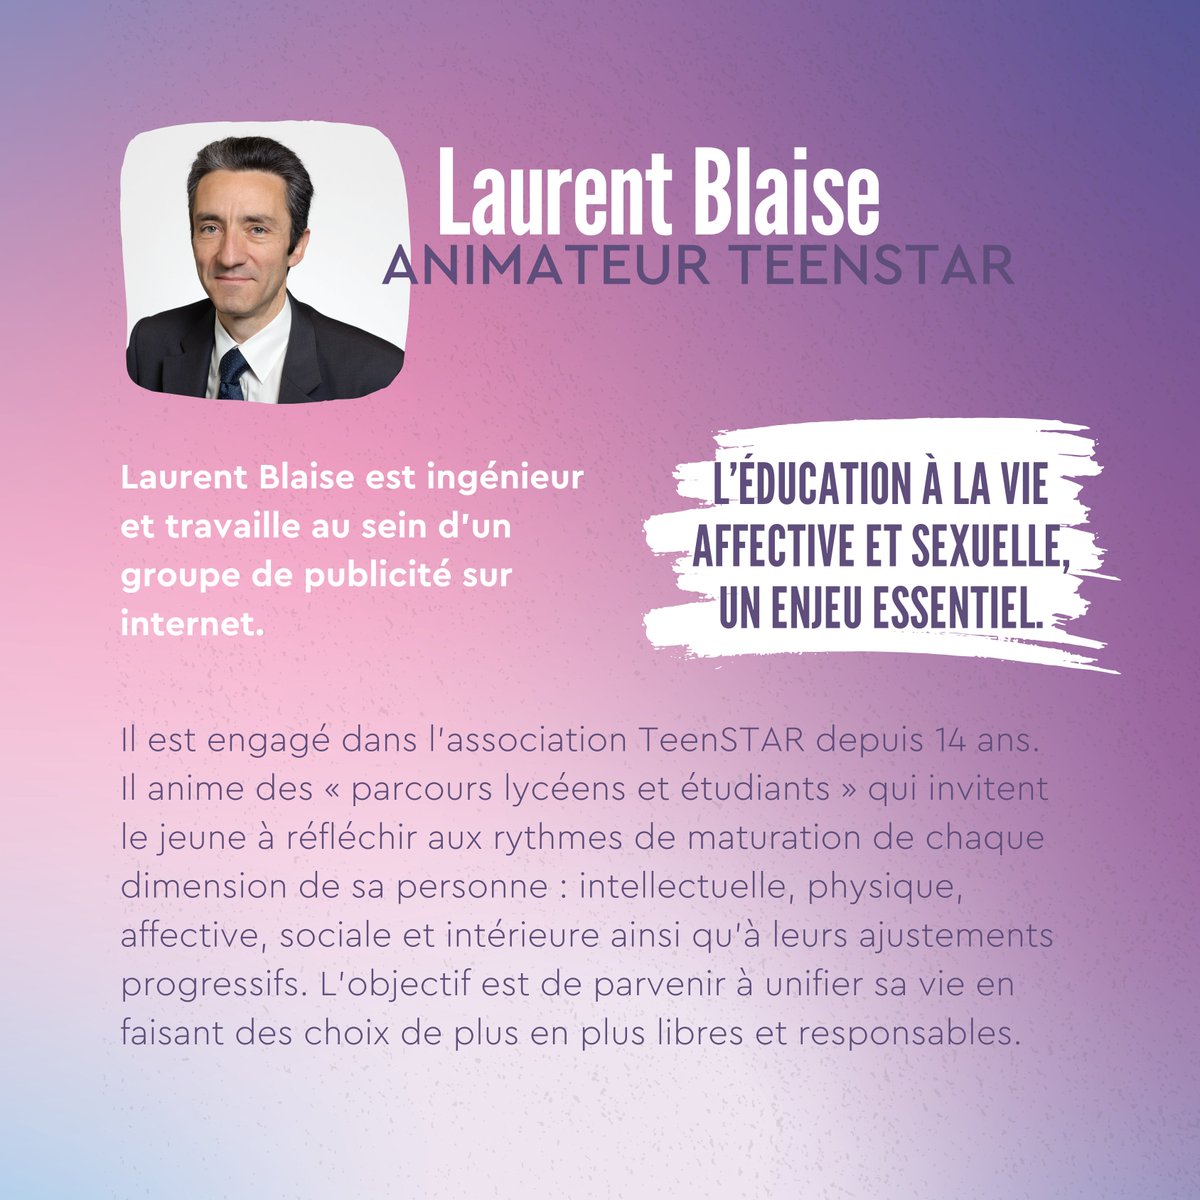 Nous accueillons à présent Laurent Blaise qui nous parle ce soir de 'L’éducation à la vie affective et sexuelle, un enjeu essentiel'.

#UDvie #Pariersurlavie #éducationsexuelle #éducationaffective #ado